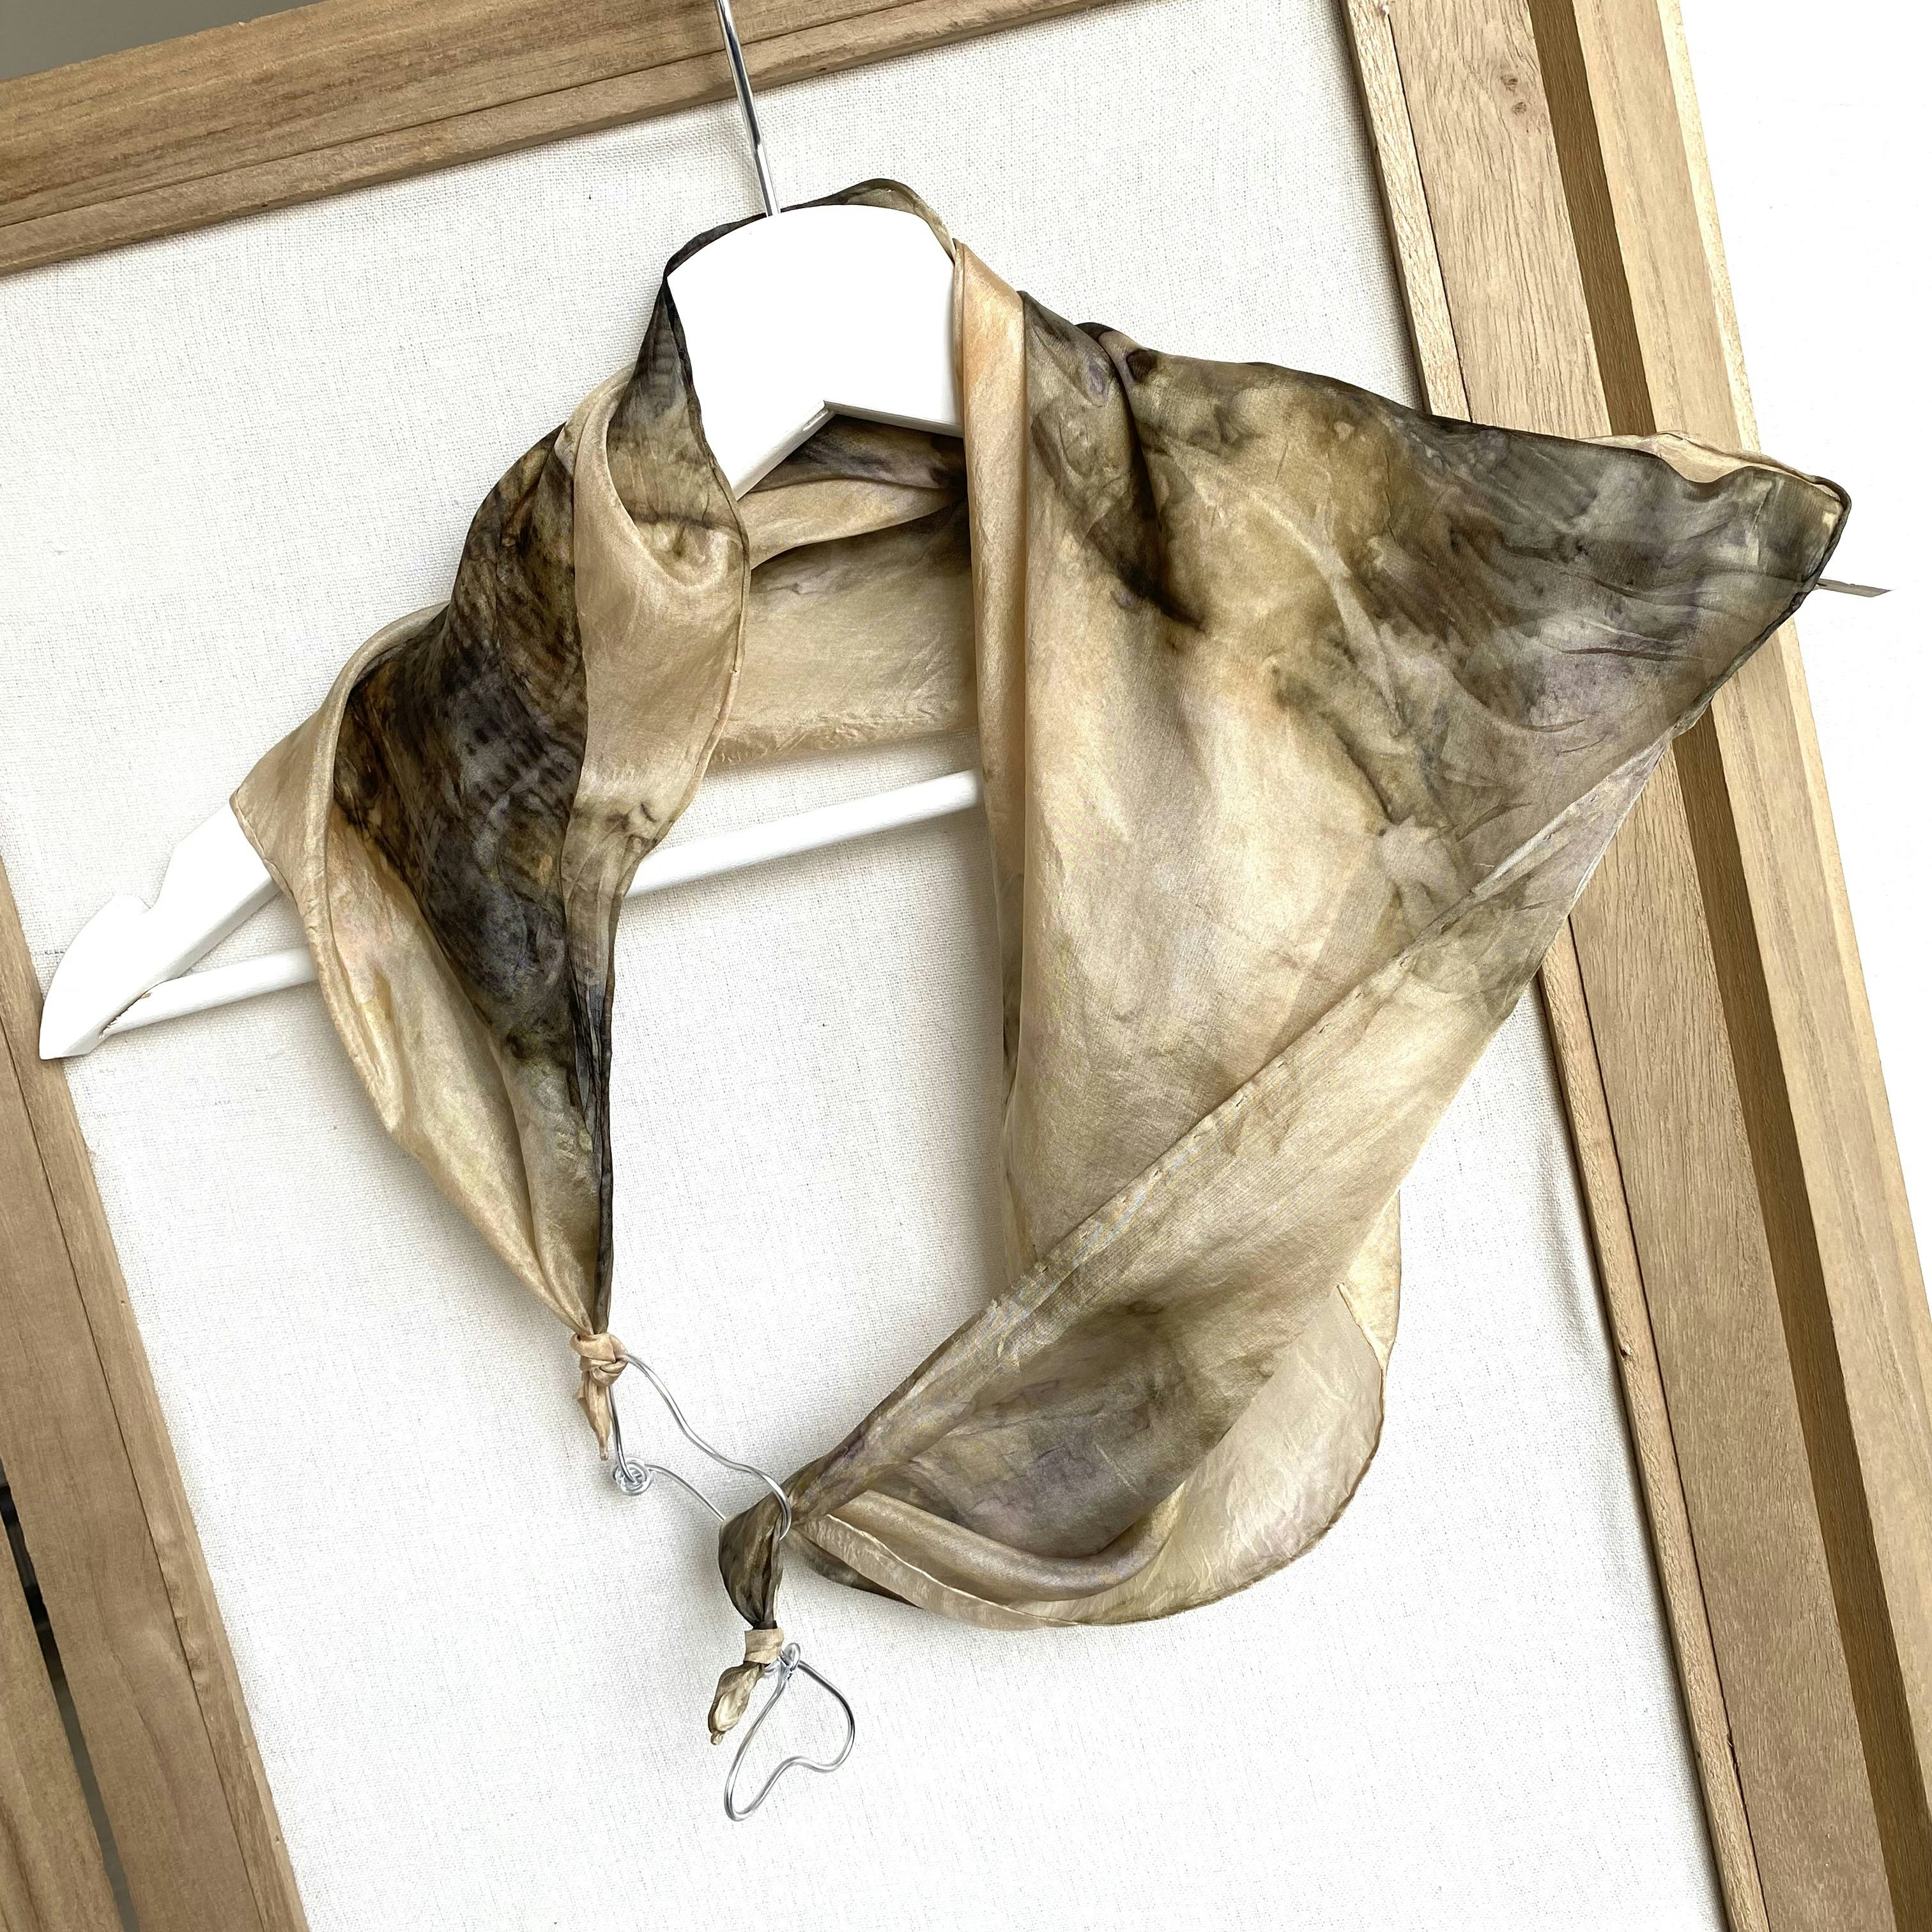 Foulard gioielli di seta tinto con foglie di acero, handwerkliches Produkt für den Direktverkauf in der Schweiz